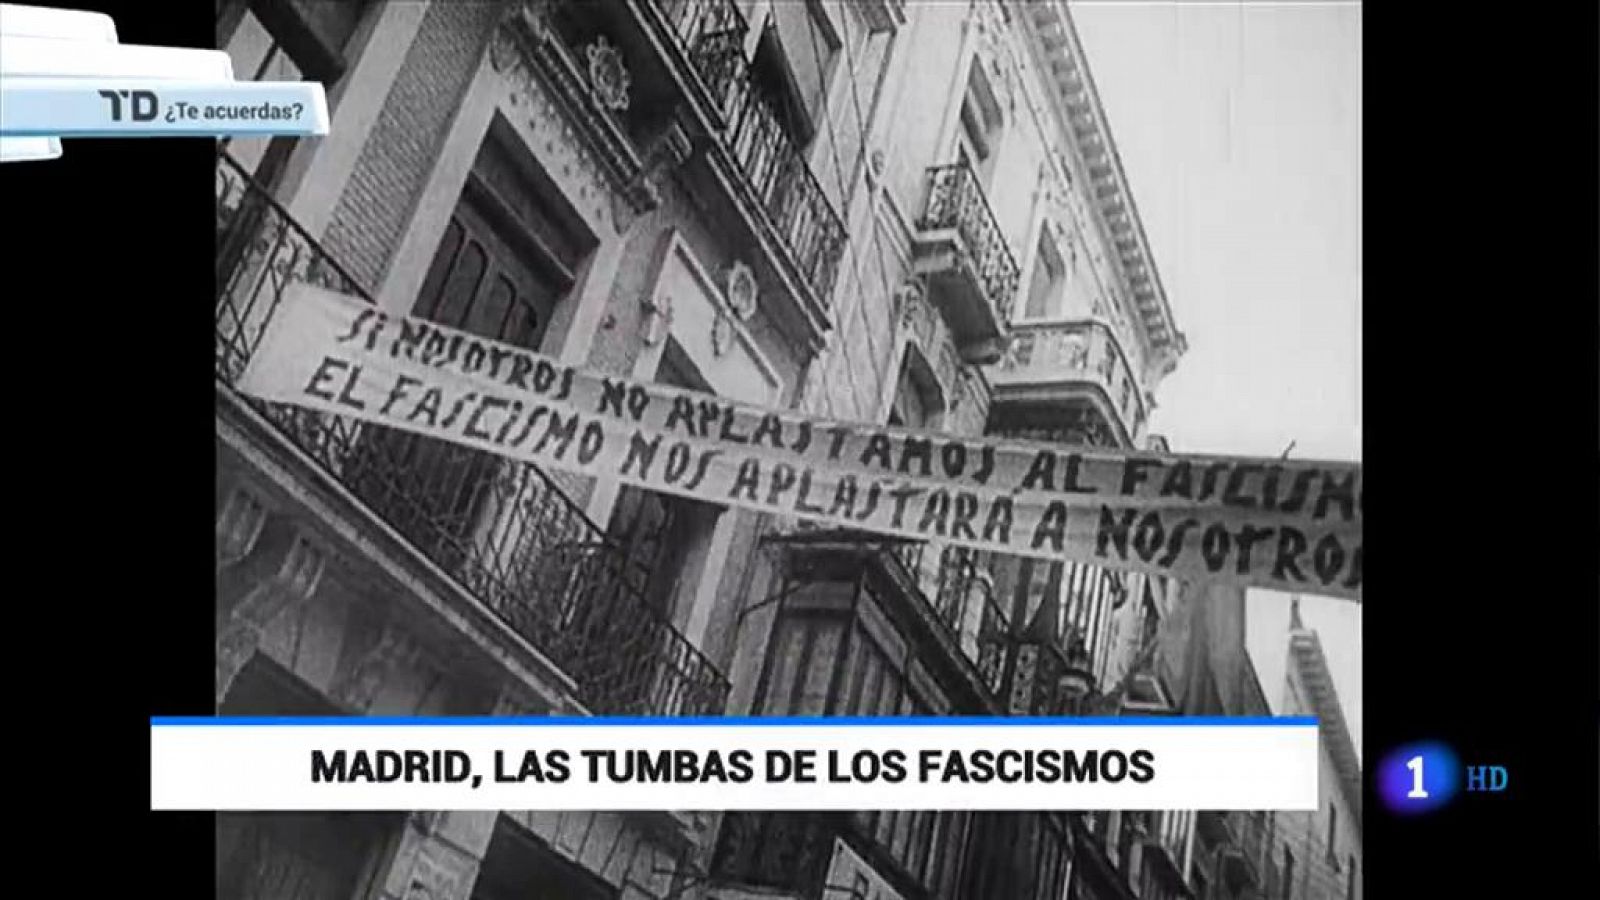 ¿Te acuerdas? Dictadores enterrados en Madrid - RTVE.es